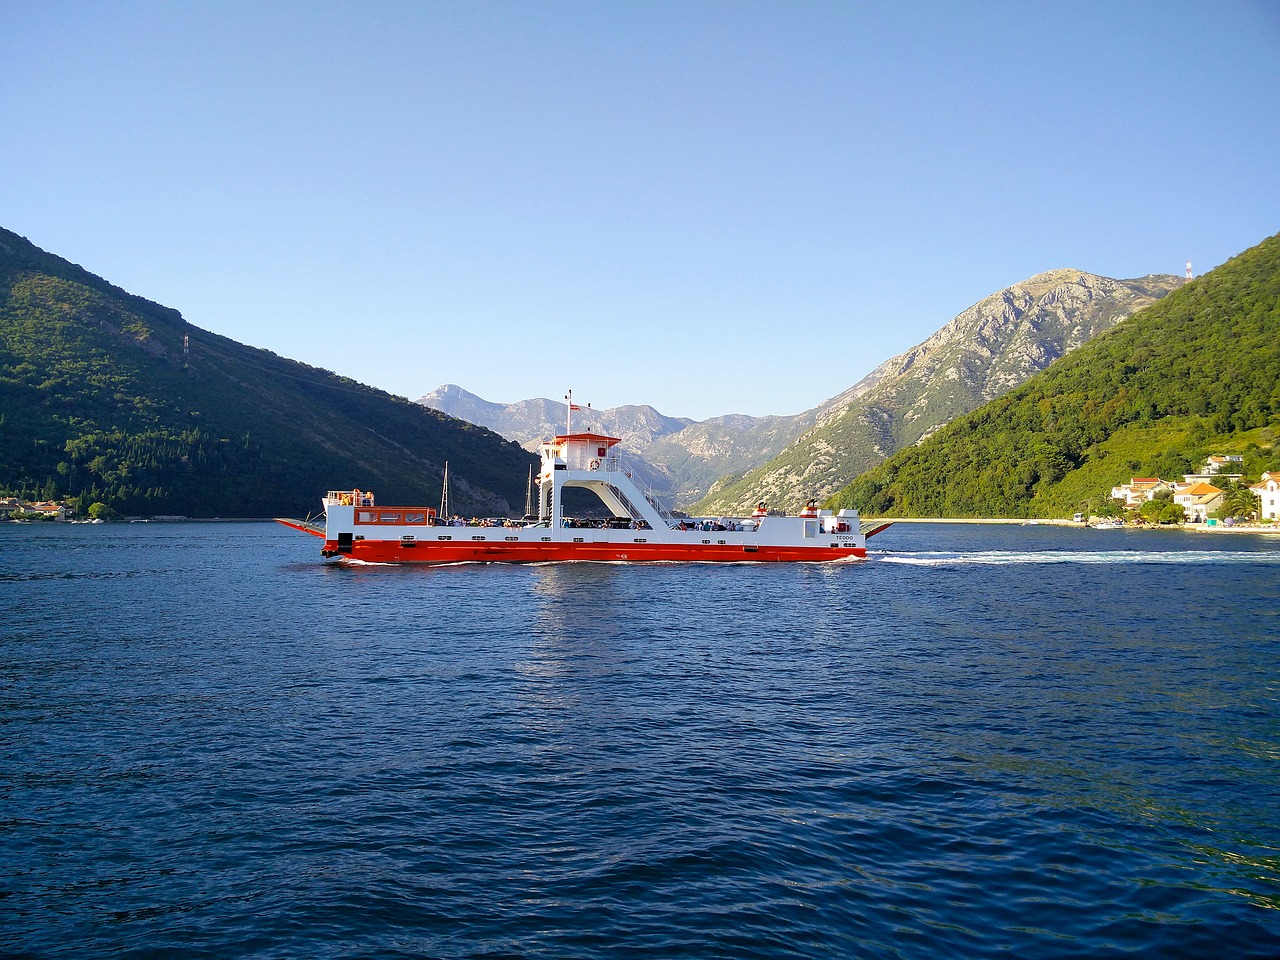 Morsko dobro kupuje flotu braće Ban za više od 8 miliona eura